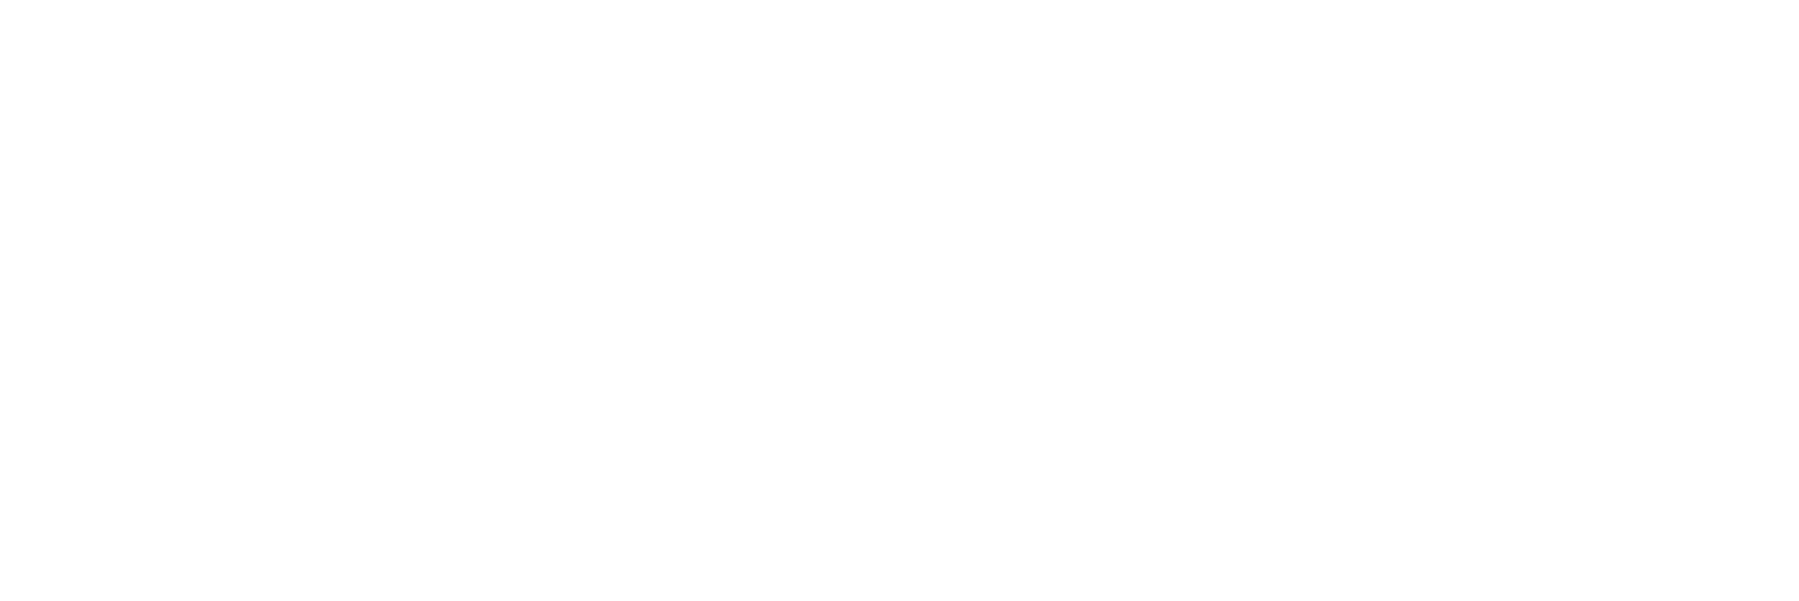 ParkRx Arizona